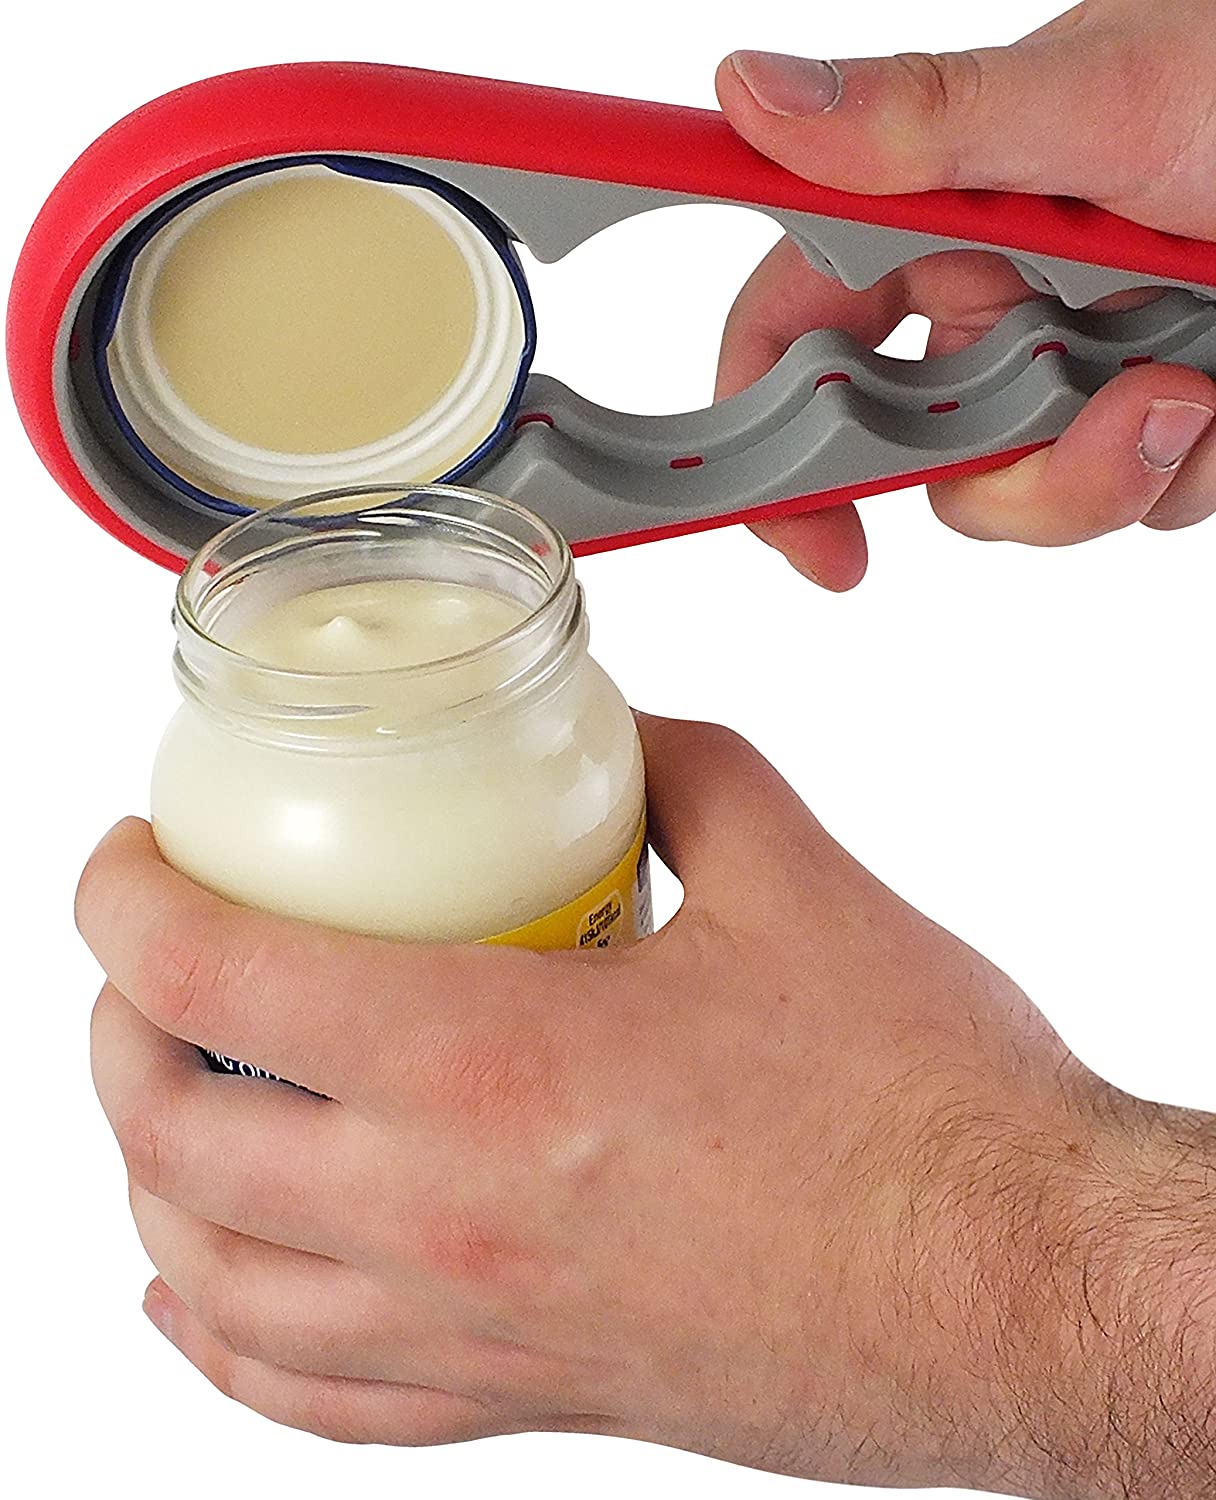 Jar Opener and Non-Slip Gripper Bottle Opener for Weak Hands, Arthritis and Elderly